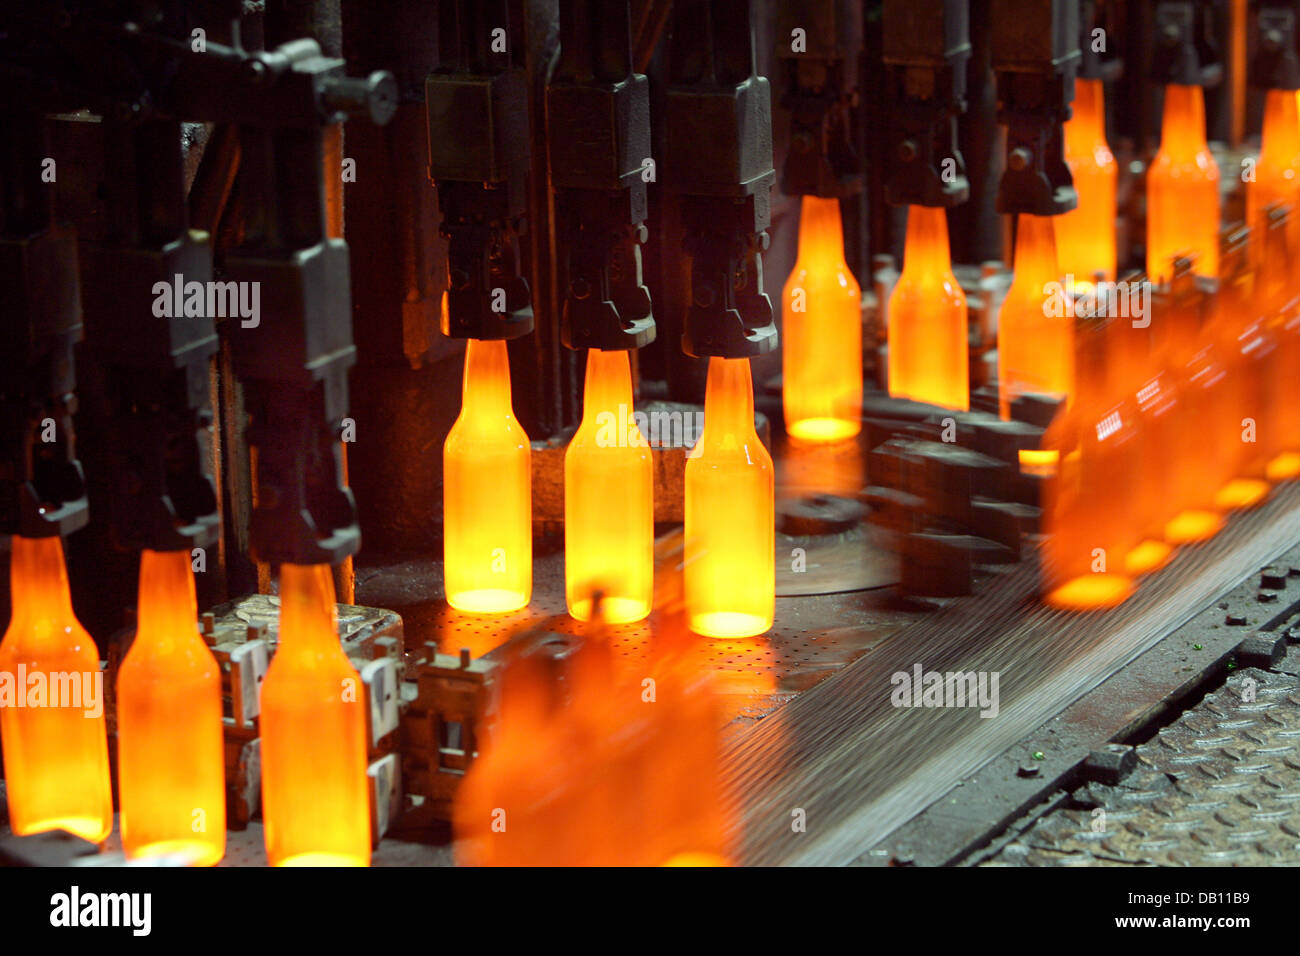 Glühenden Glasflaschen in einer Glasfabrik Wirges, Deutschland, 17. Oktober  2007. In der Glashütte Glas ist recycelt und für die Herstellung neuer  Flaschen eingesetzt. Foto: Franz-Peter Tschauner Stockfotografie - Alamy